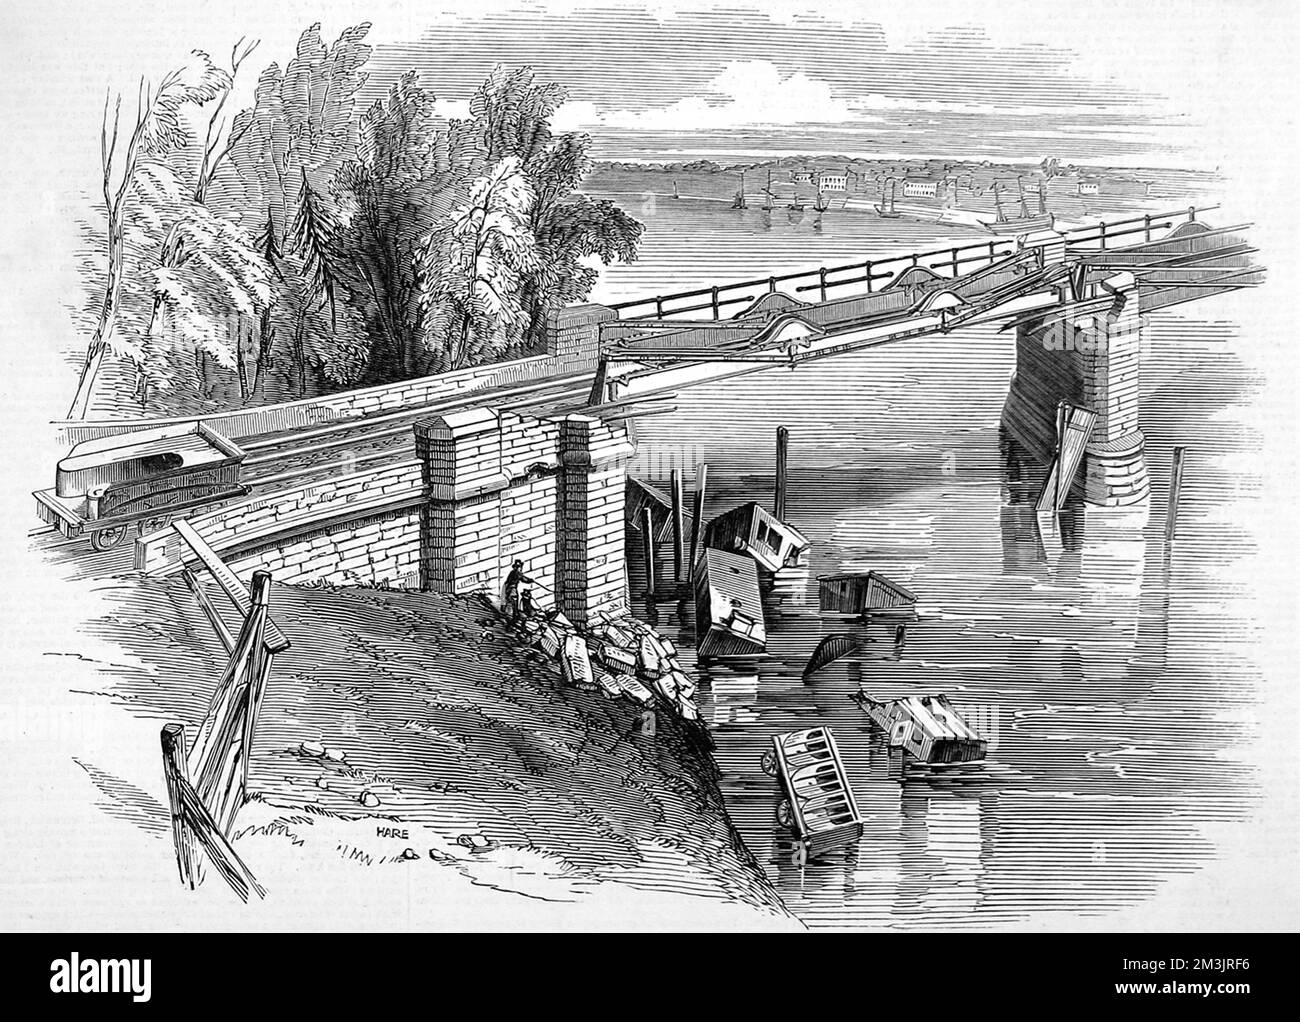 Eisenbahnunfall in Chester mit einer verfallenen Strecke der Dee-Brücke. Es wurde angenommen, dass das Gewicht des Zuges dazu führte, dass er einen Träger traf, an dem die Brücke weggab und der Zug hindurchstürzte. Datum: 1847 Stockfoto